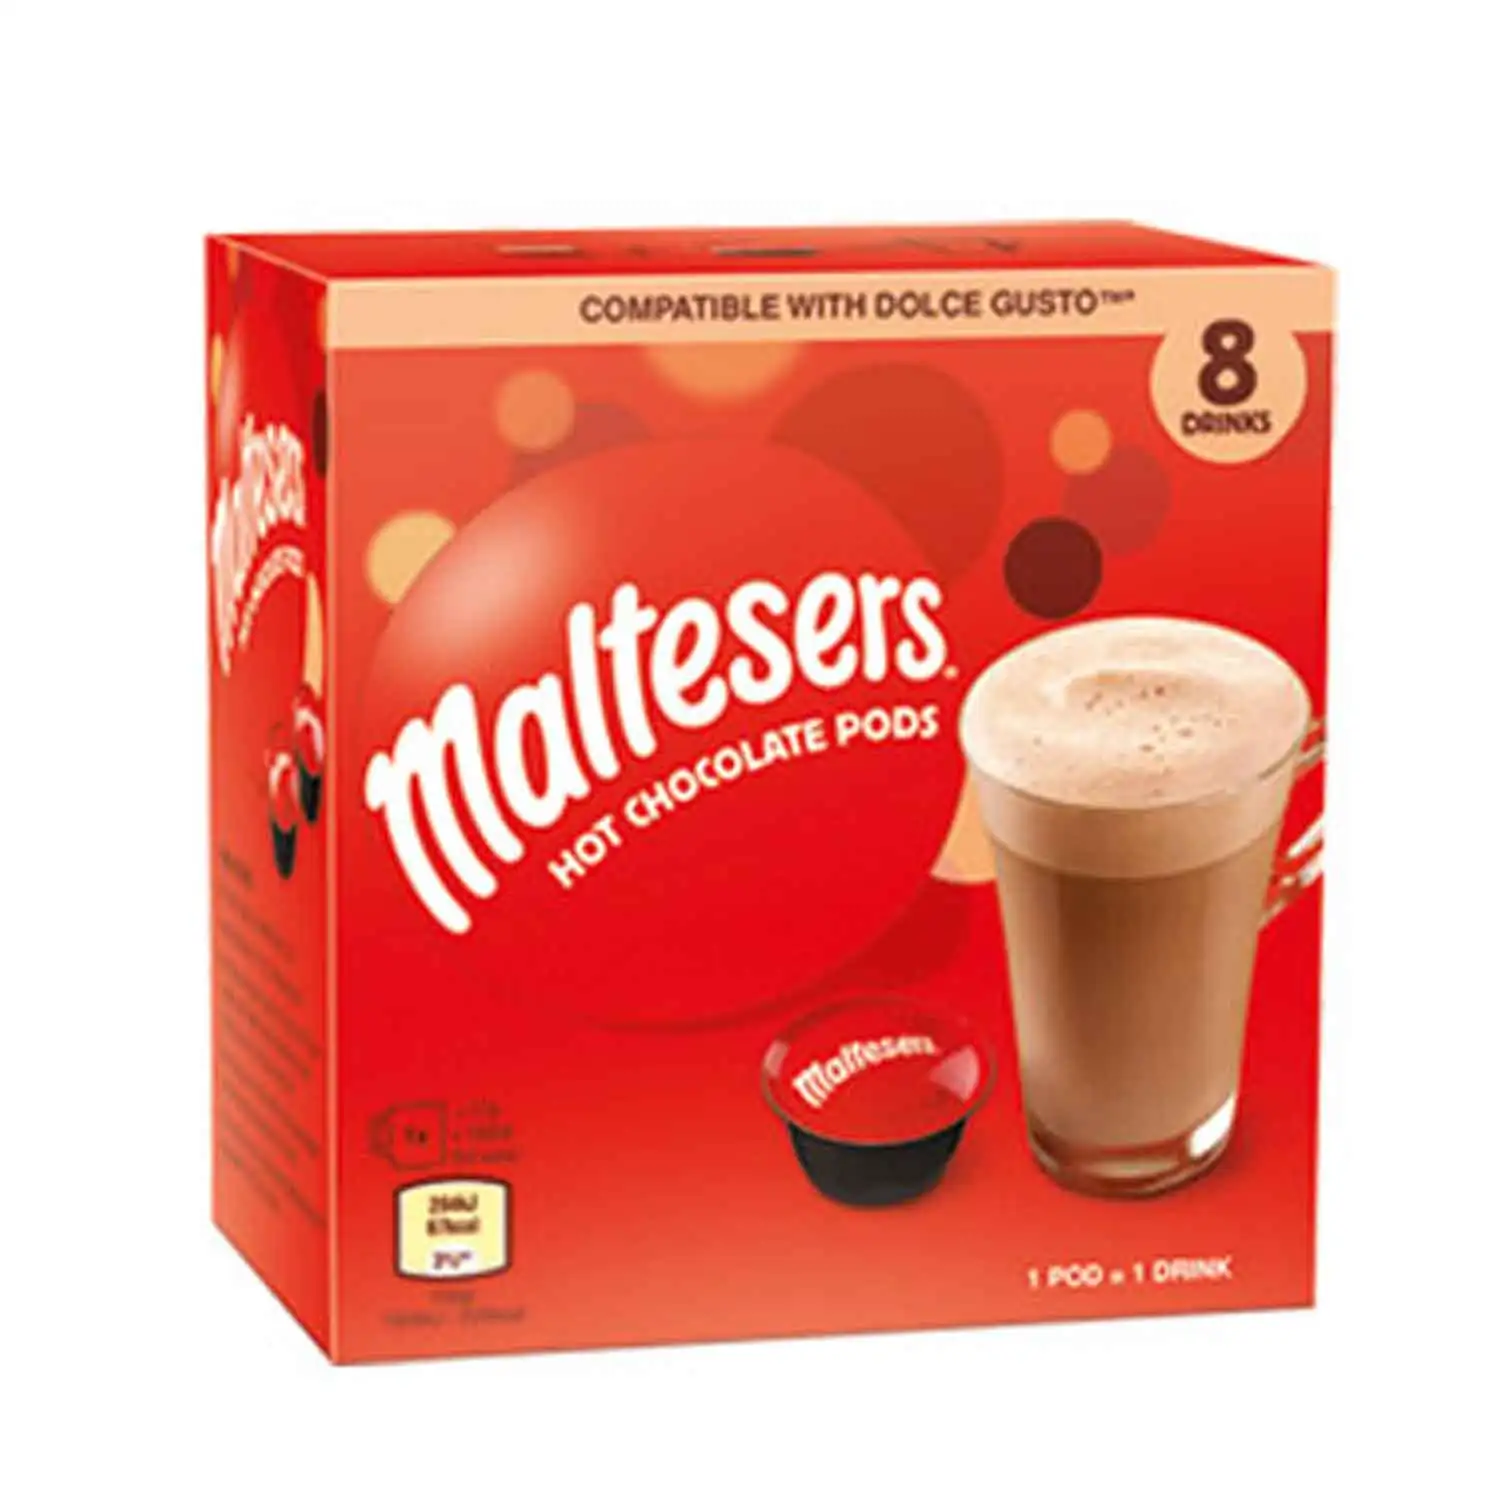 Maltesers chocolat chaud pods 8x17g - Buy at Real Tobacco